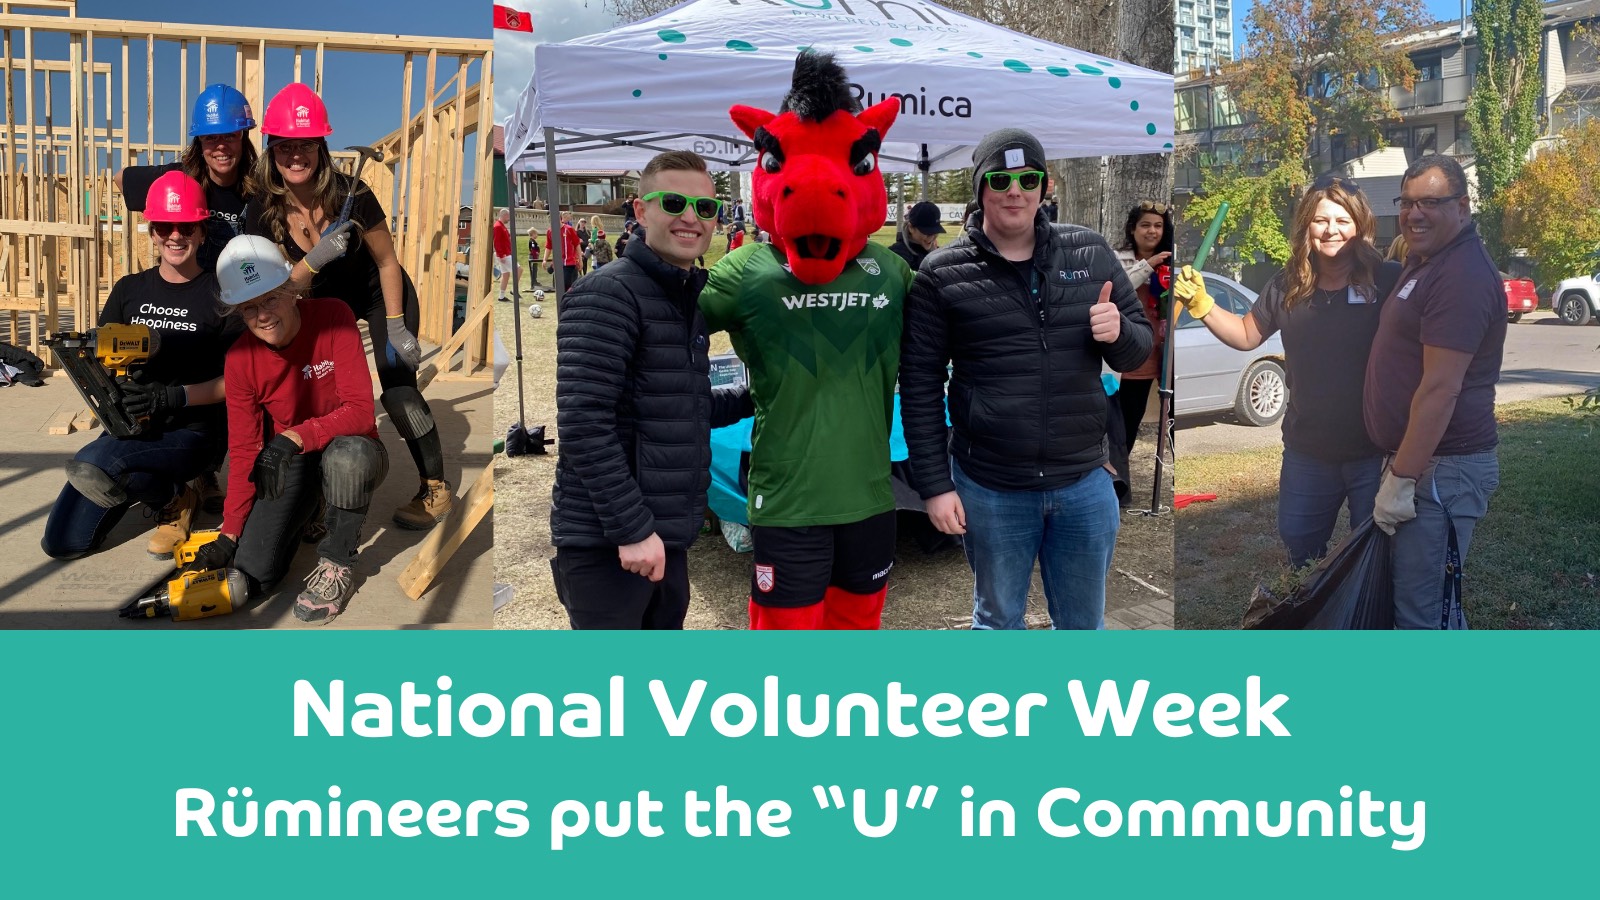 Rümi volunteers helping in the community by volunteering. Graphic words say "National Volunteer Week Rümineers put the 'U' in community"